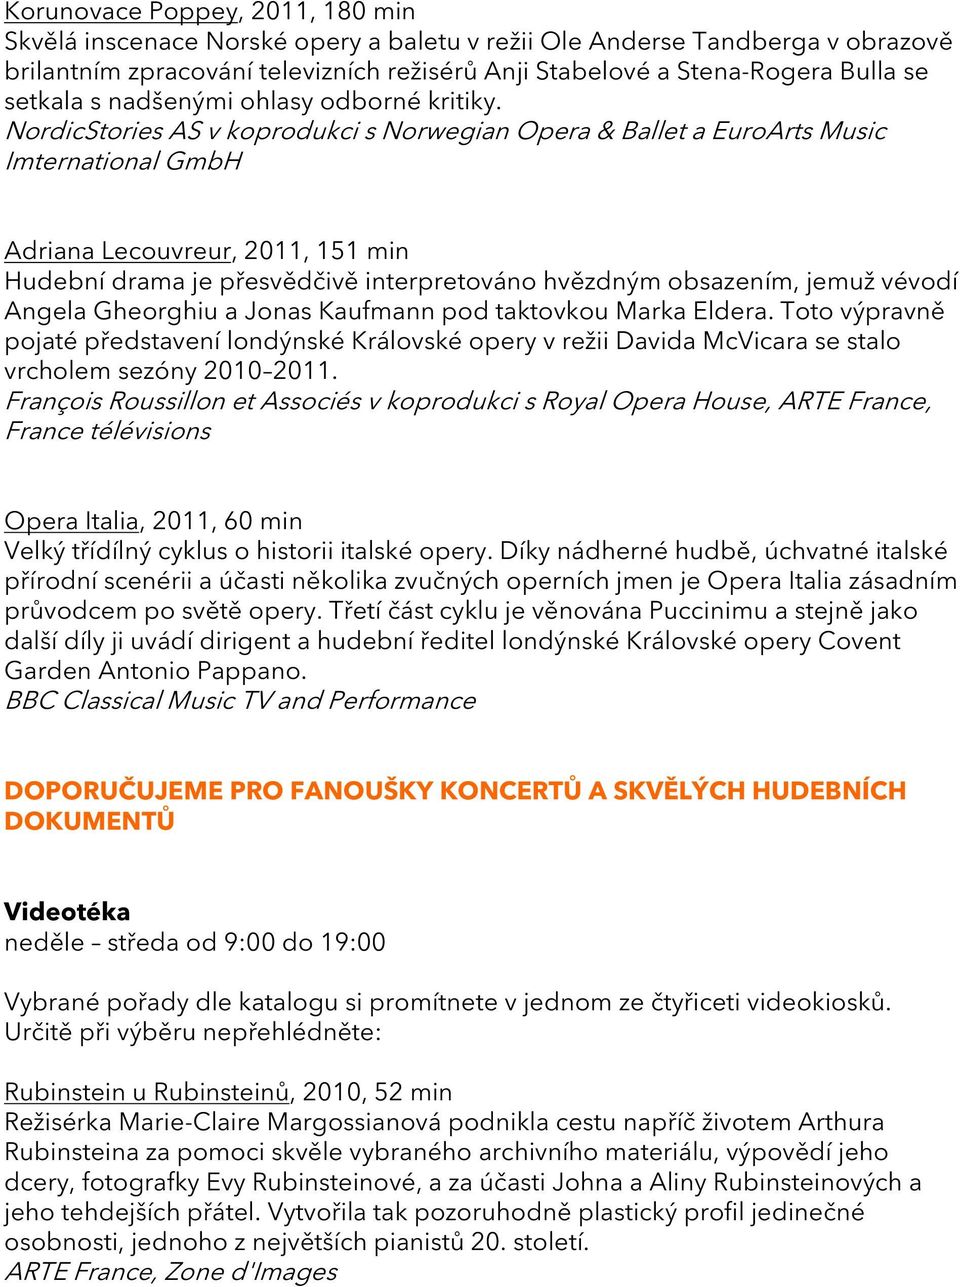 NordicStories AS v koprodukci s Norwegian Opera & Ballet a EuroArts Music Imternational GmbH Adriana Lecouvreur, 2011, 151 min Hudební drama je přesvědčivě interpretováno hvězdným obsazením, jemuž